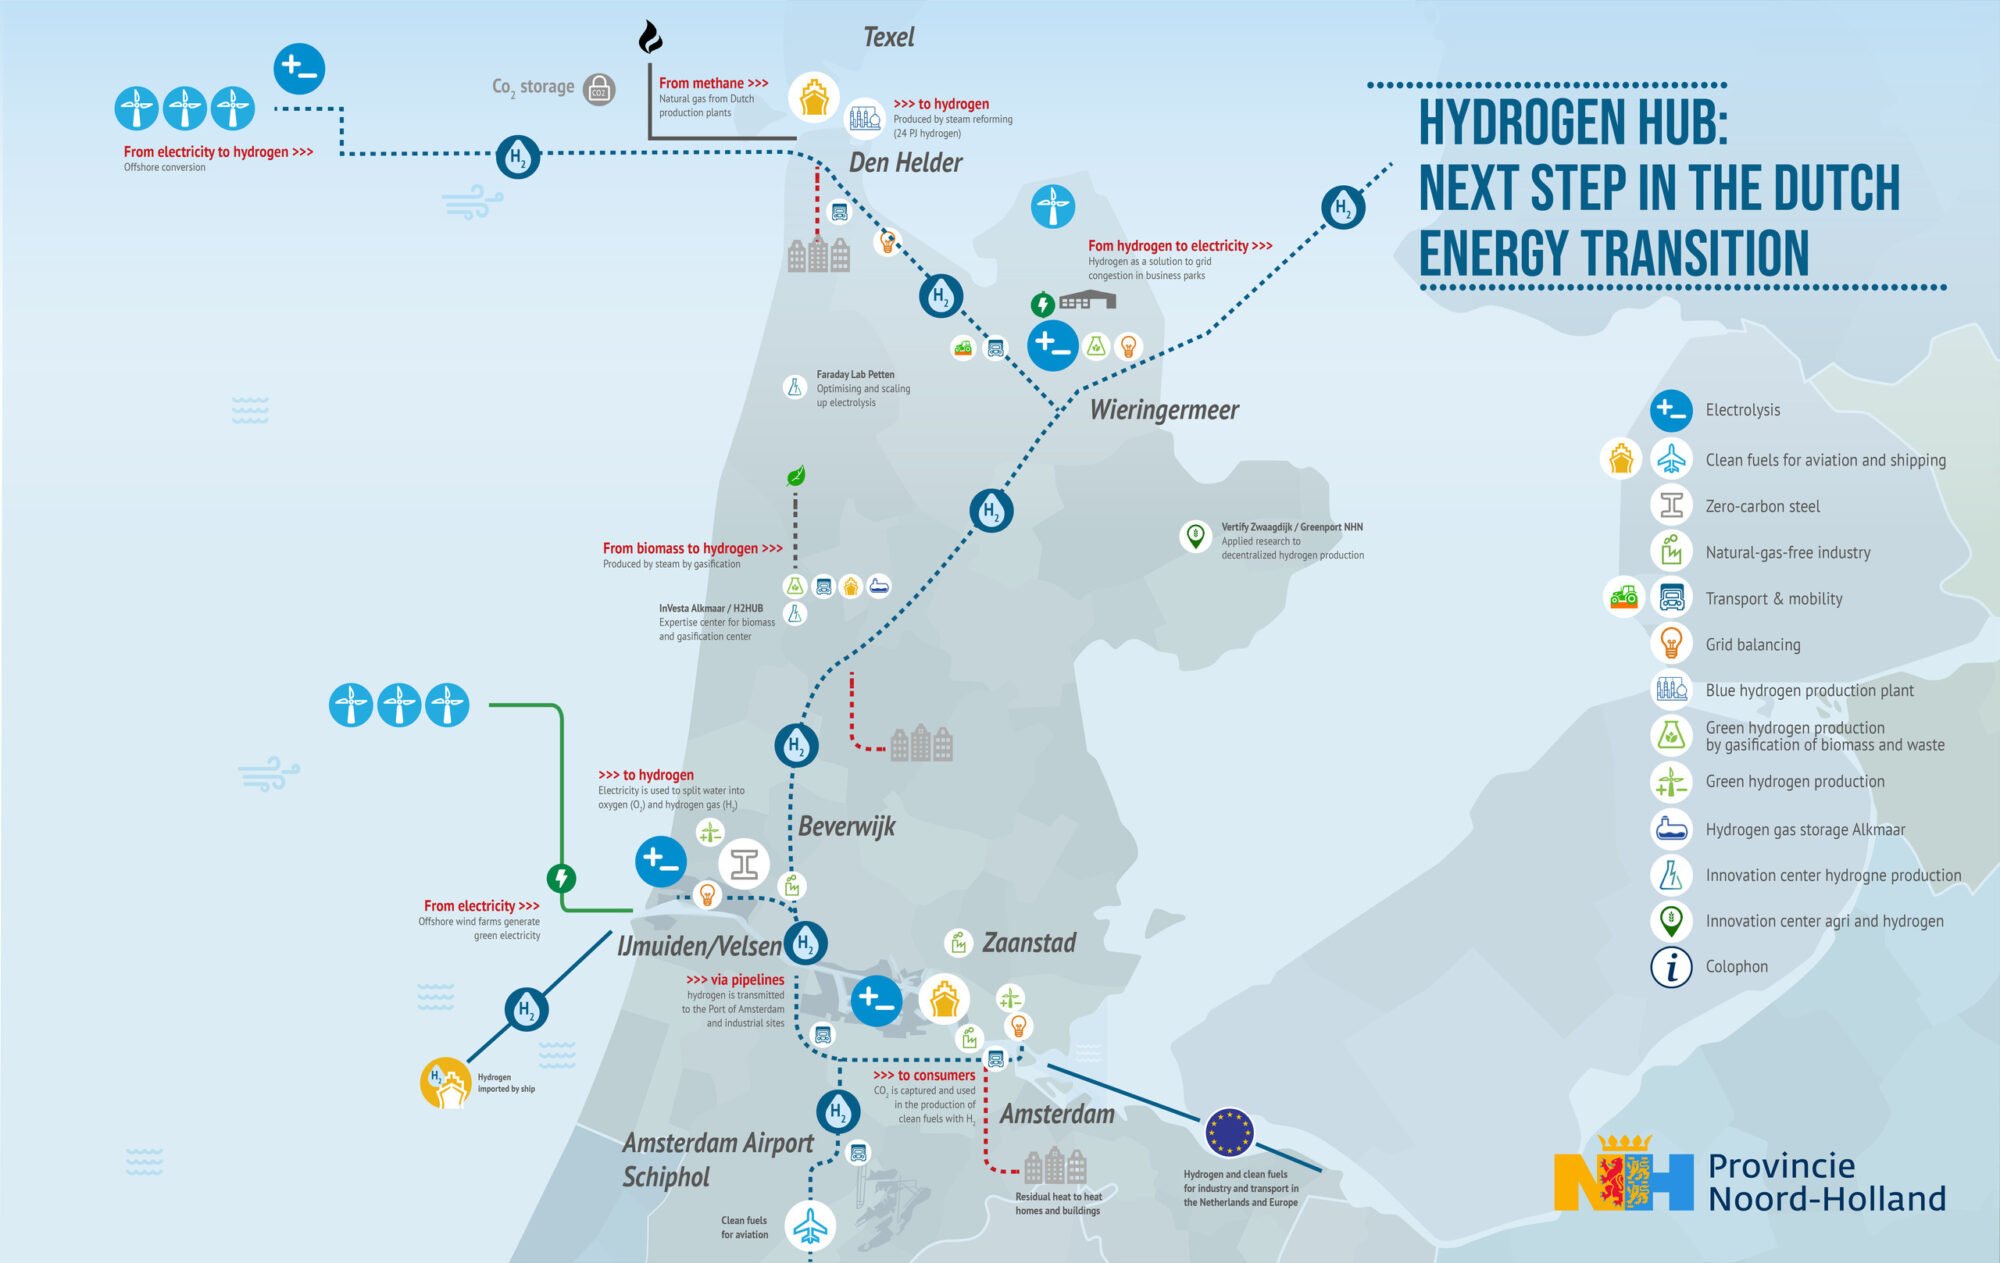 De Noord-Hollandse clusters krijgen de Europese status van hydrogen valley